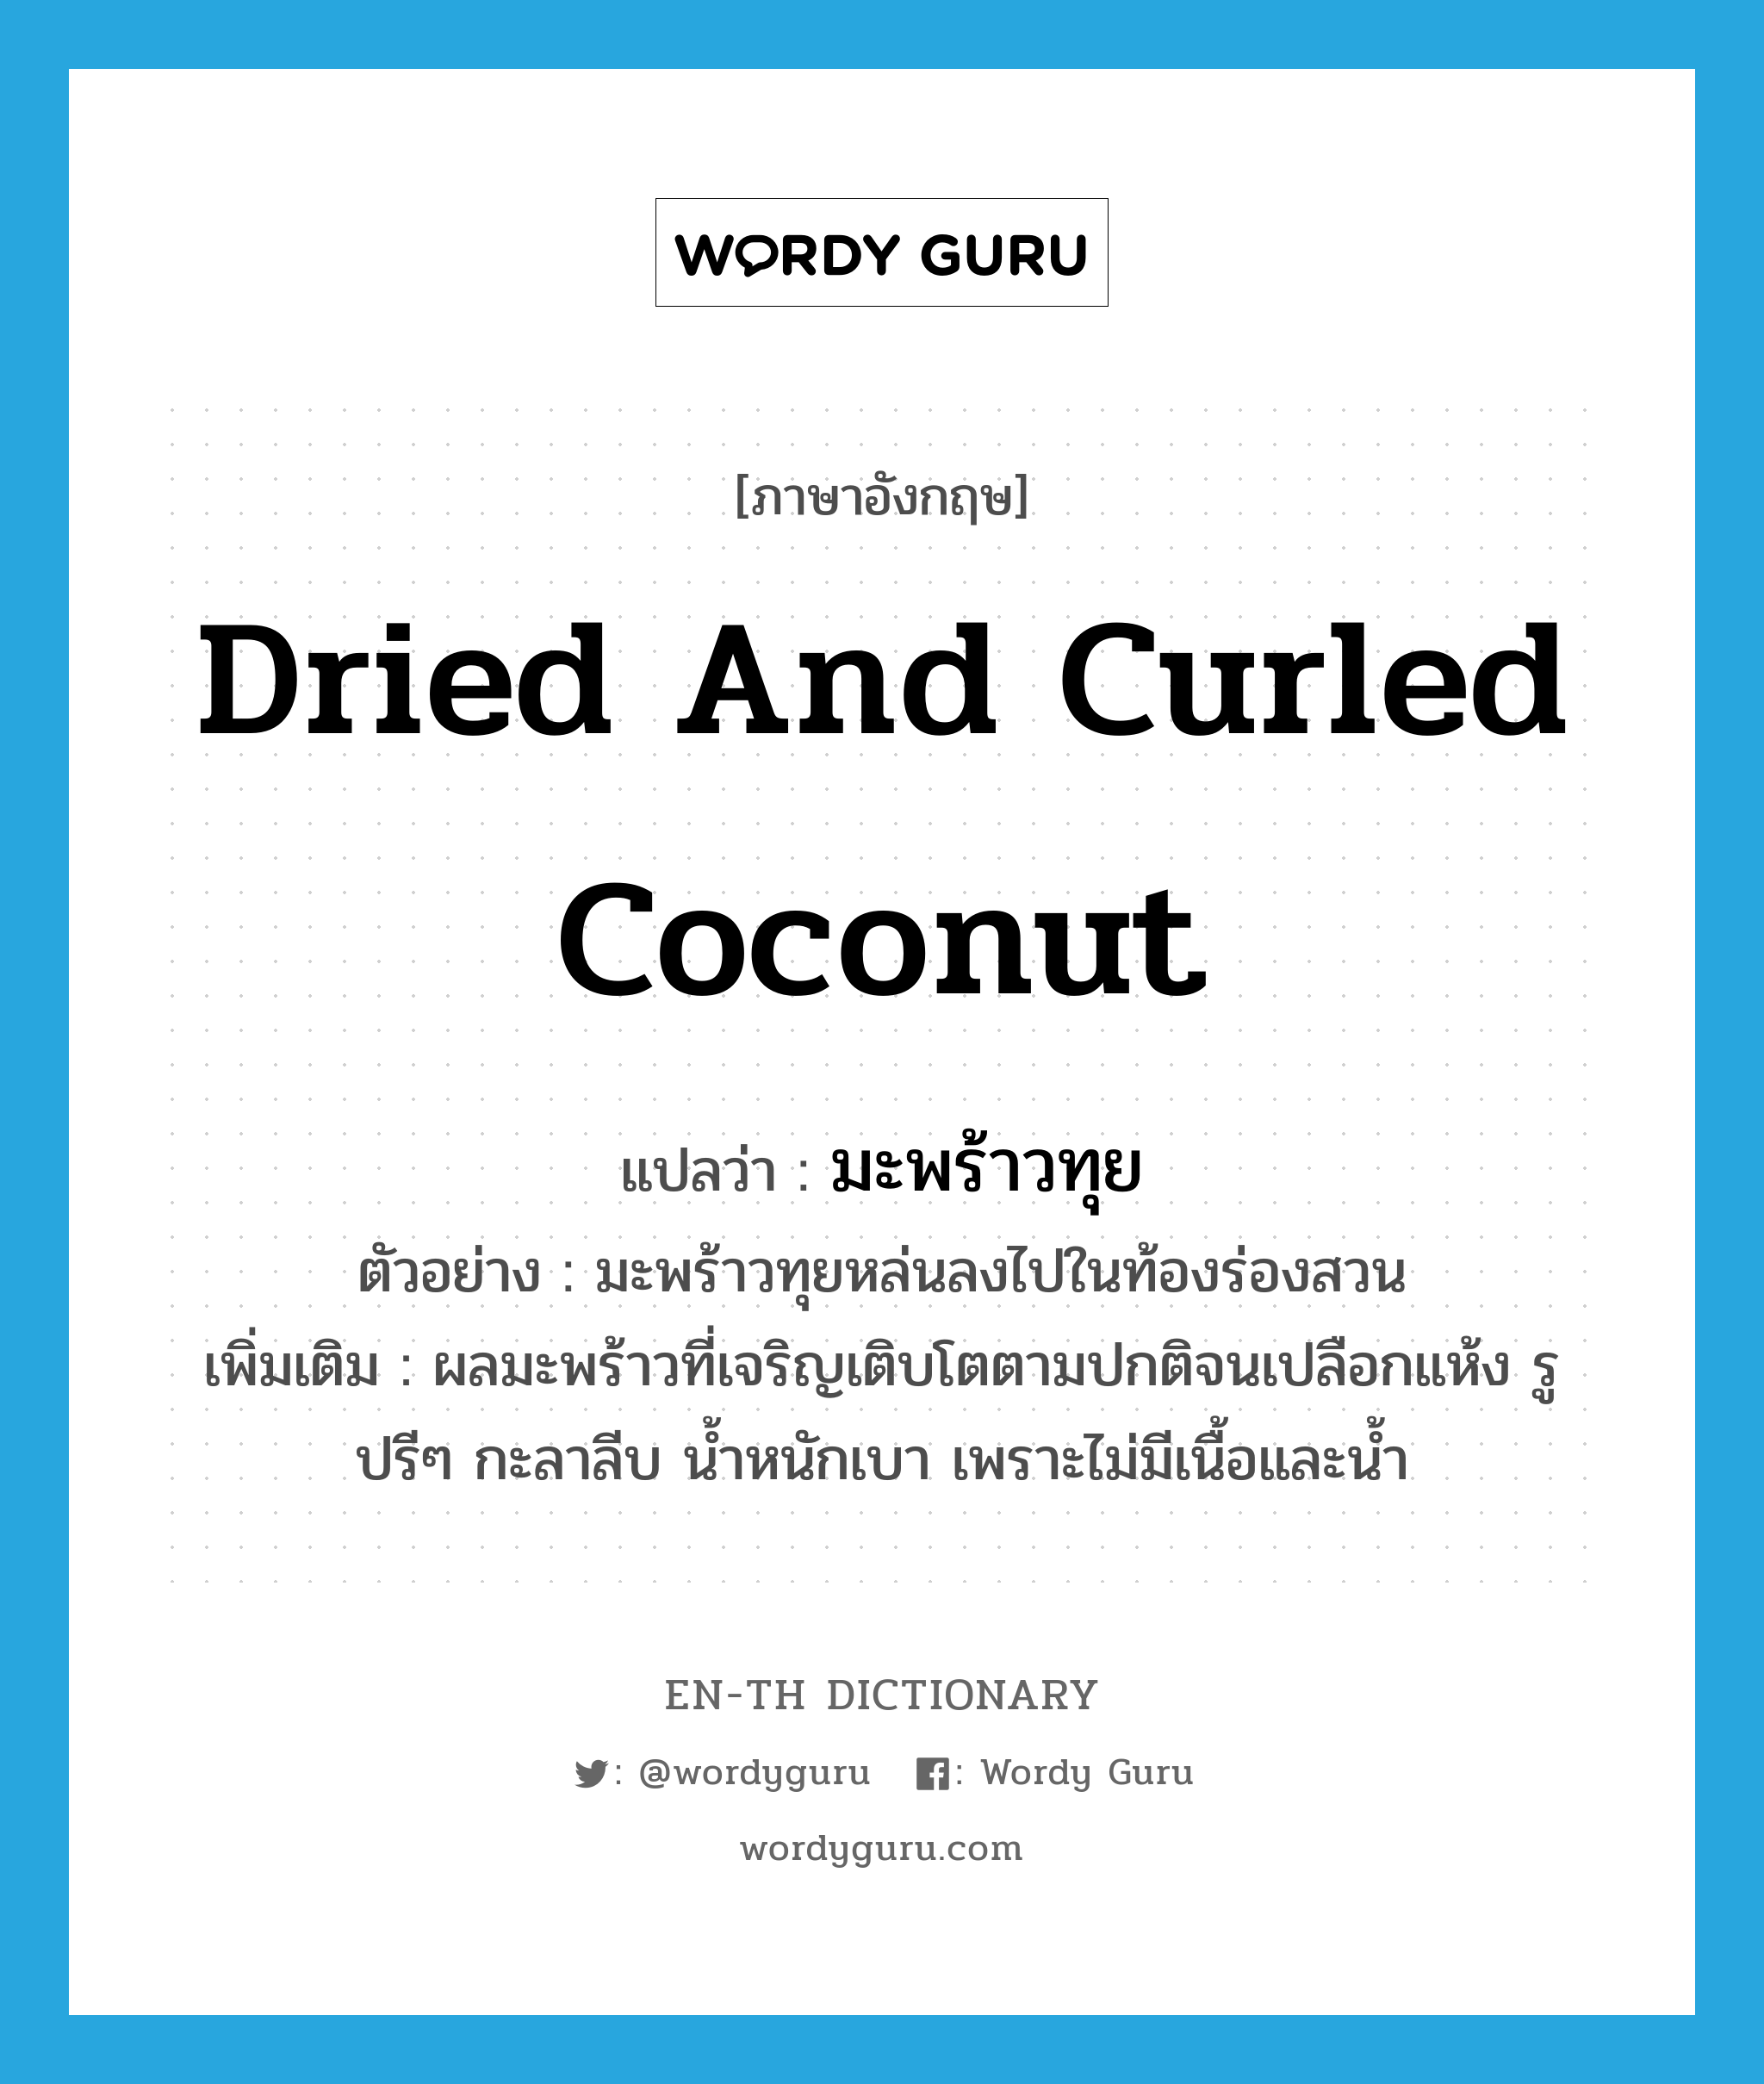 dried and curled coconut แปลว่า?, คำศัพท์ภาษาอังกฤษ dried and curled coconut แปลว่า มะพร้าวทุย ประเภท N ตัวอย่าง มะพร้าวทุยหล่นลงไปในท้องร่องสวน เพิ่มเติม ผลมะพร้าวที่เจริญเติบโตตามปกติจนเปลือกแห้ง รูปรีๆ กะลาลีบ น้ำหนักเบา เพราะไม่มีเนื้อและน้ำ หมวด N